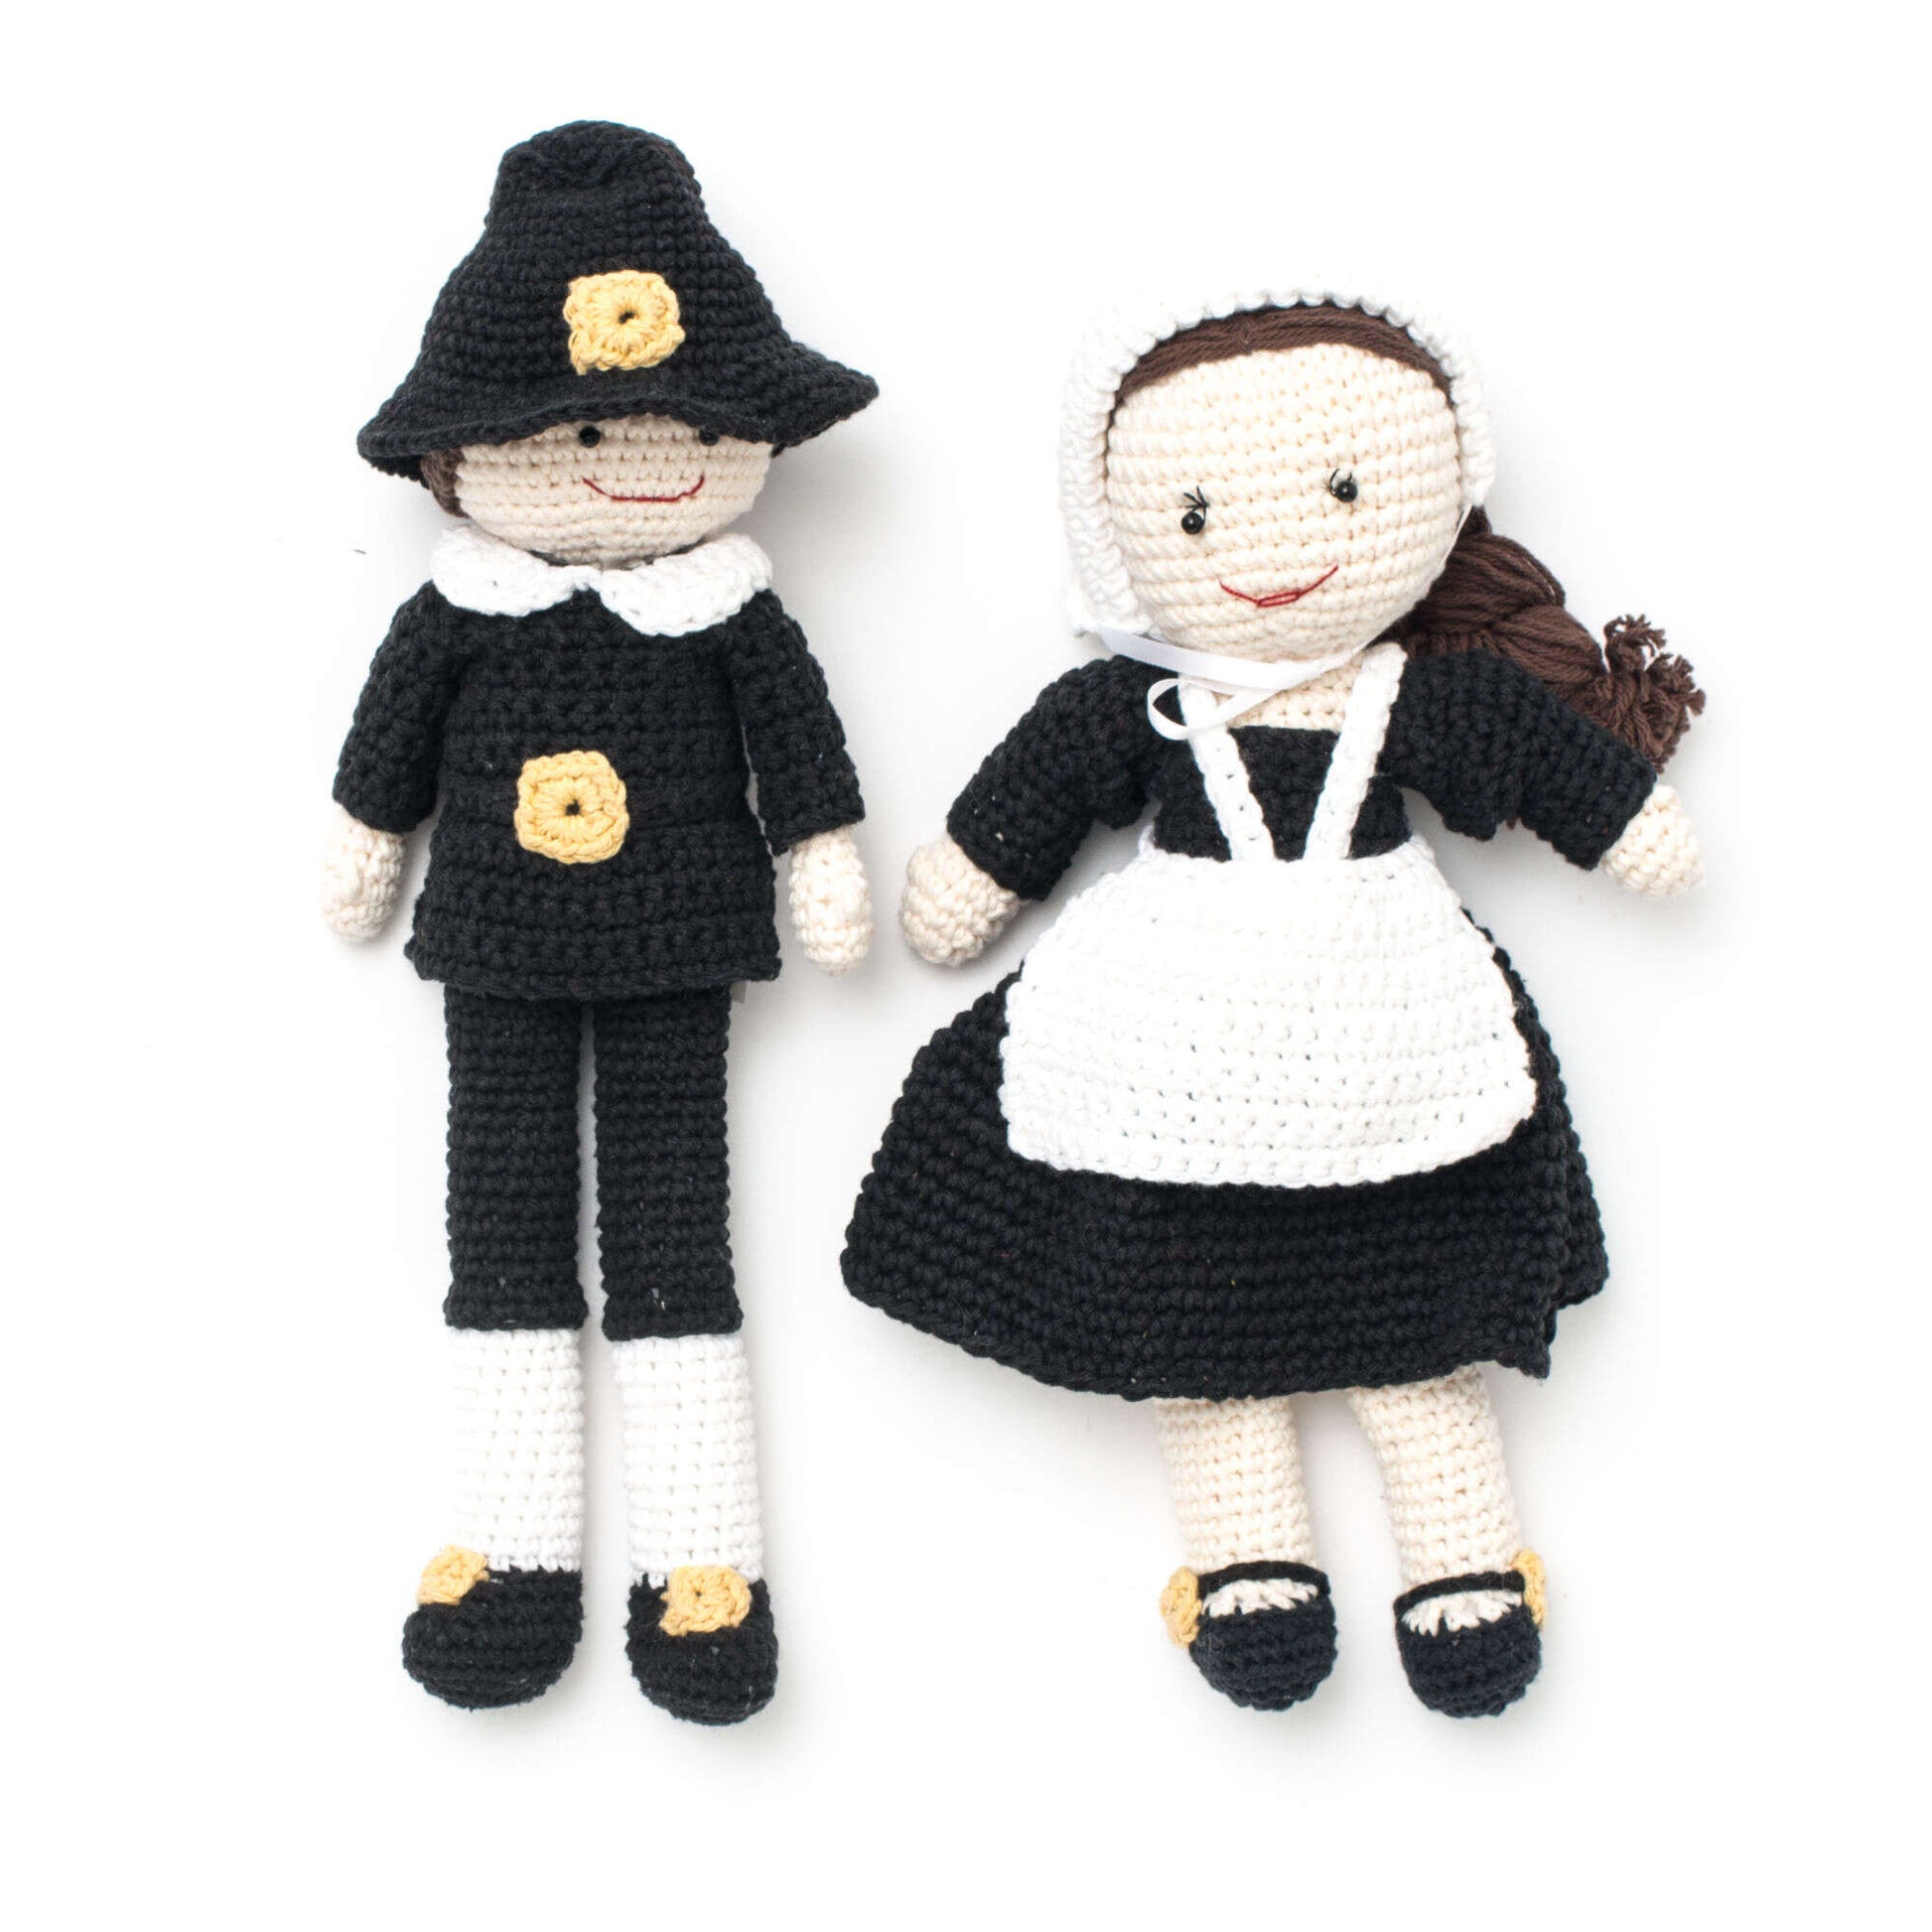 Free Lily Sugar'n Cream Pilgrim Billy Doll Crochet Pattern